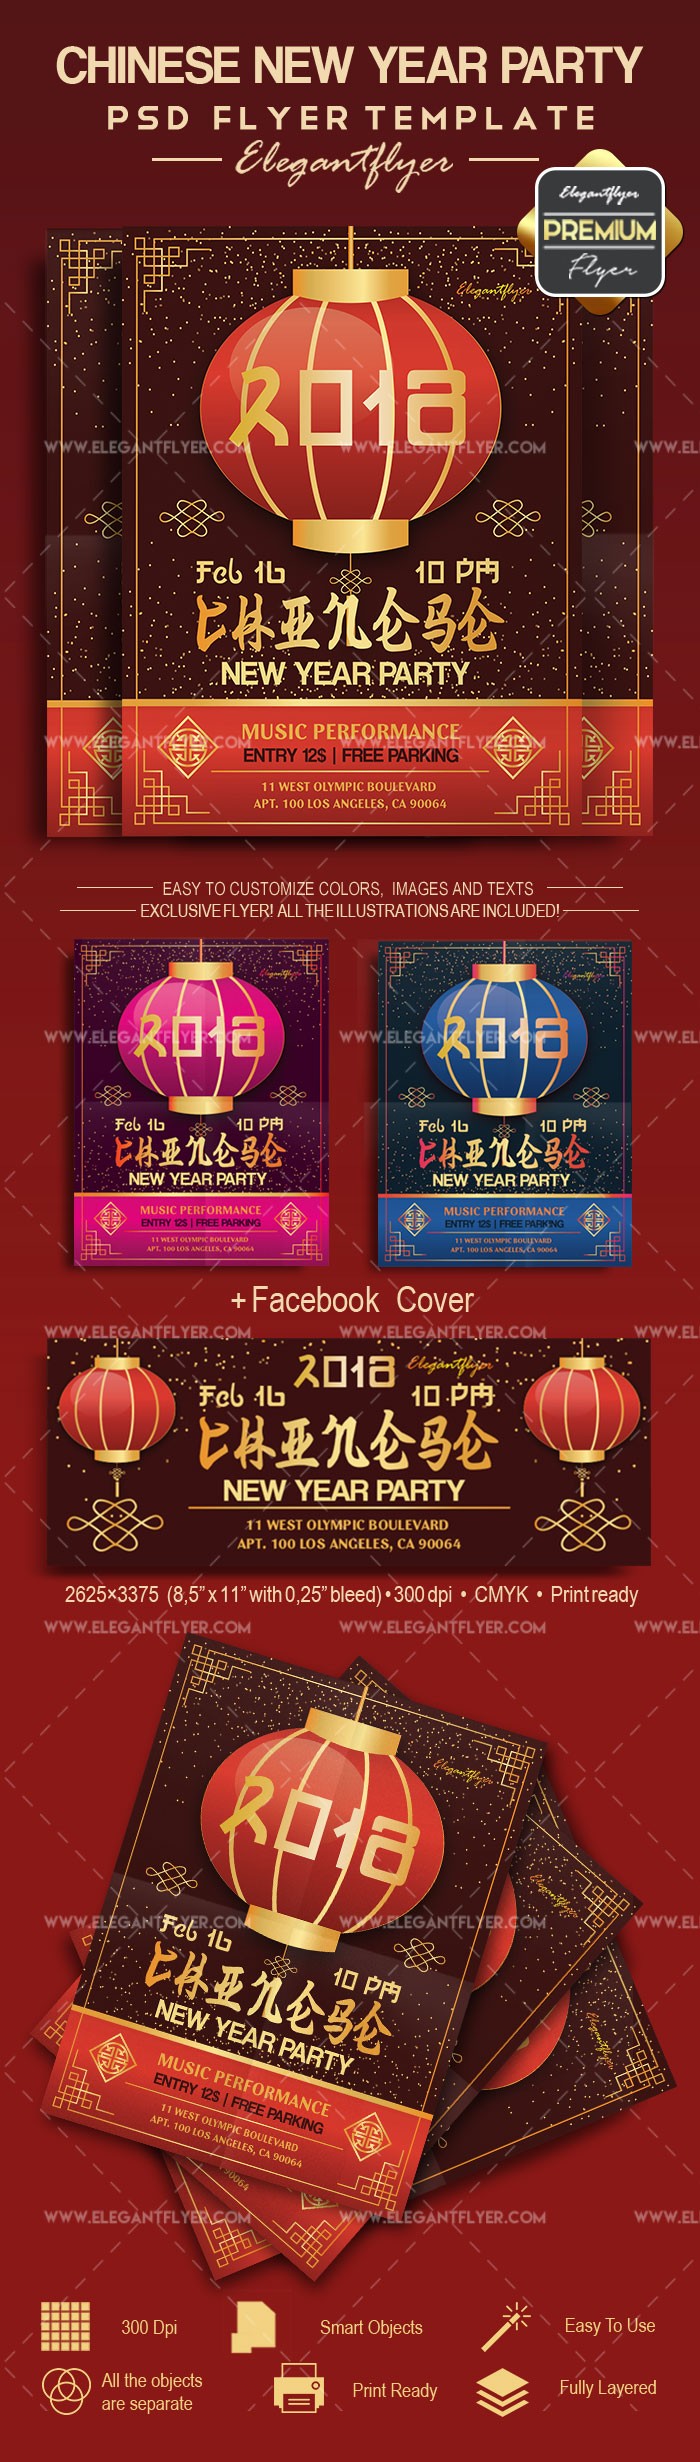 Chinesisches Neujahrsfest by ElegantFlyer